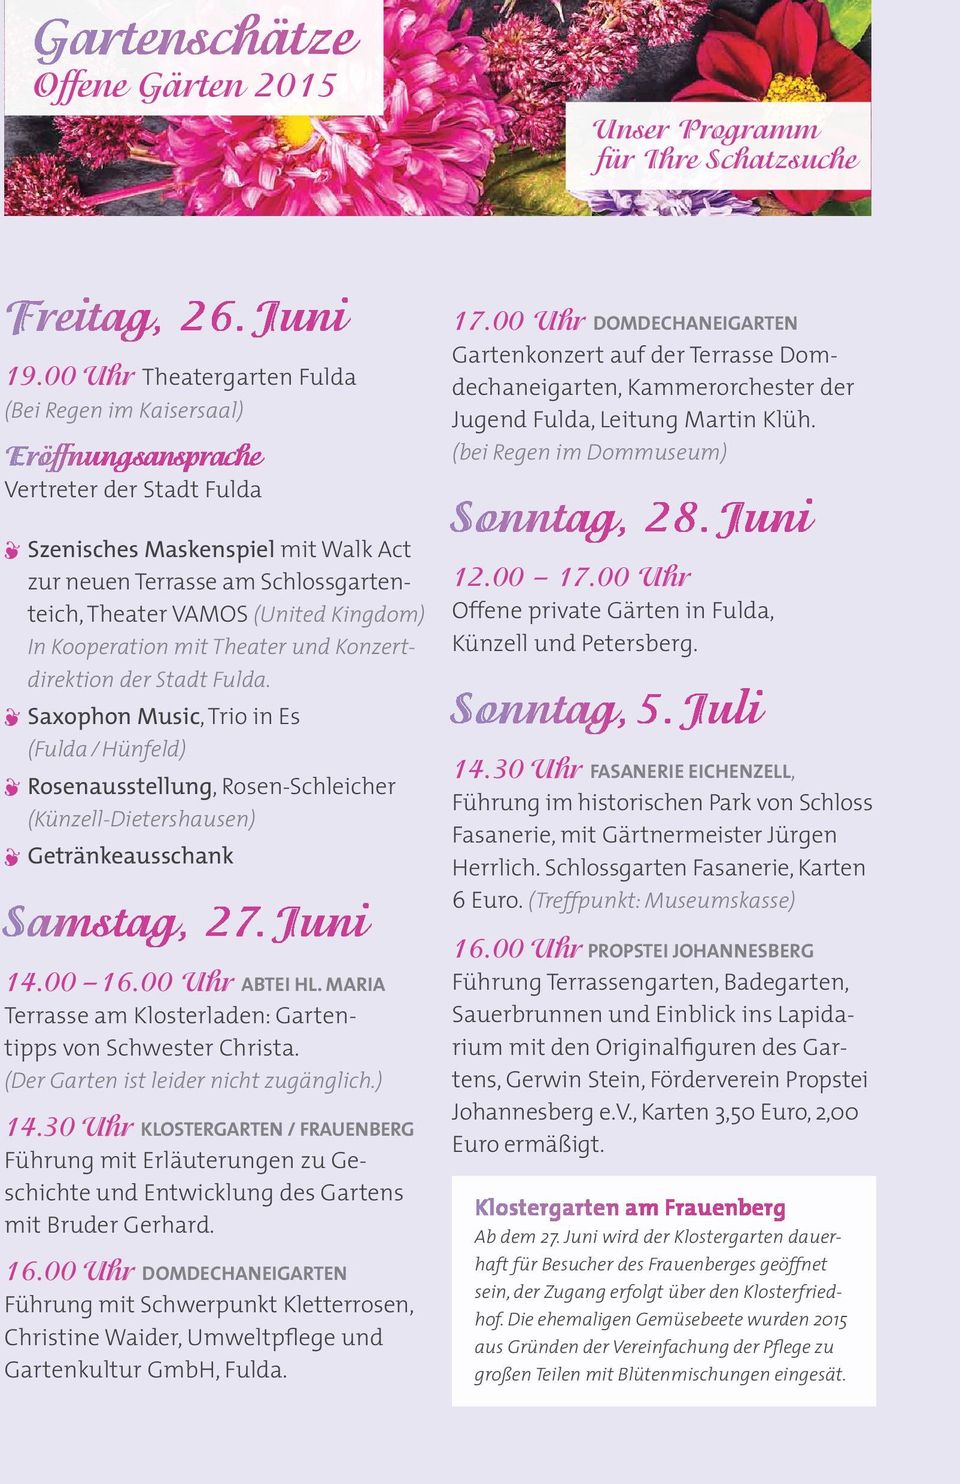 Kingdom) In Kooperation mit Theater und Konzertdirektion der Stadt Fulda.